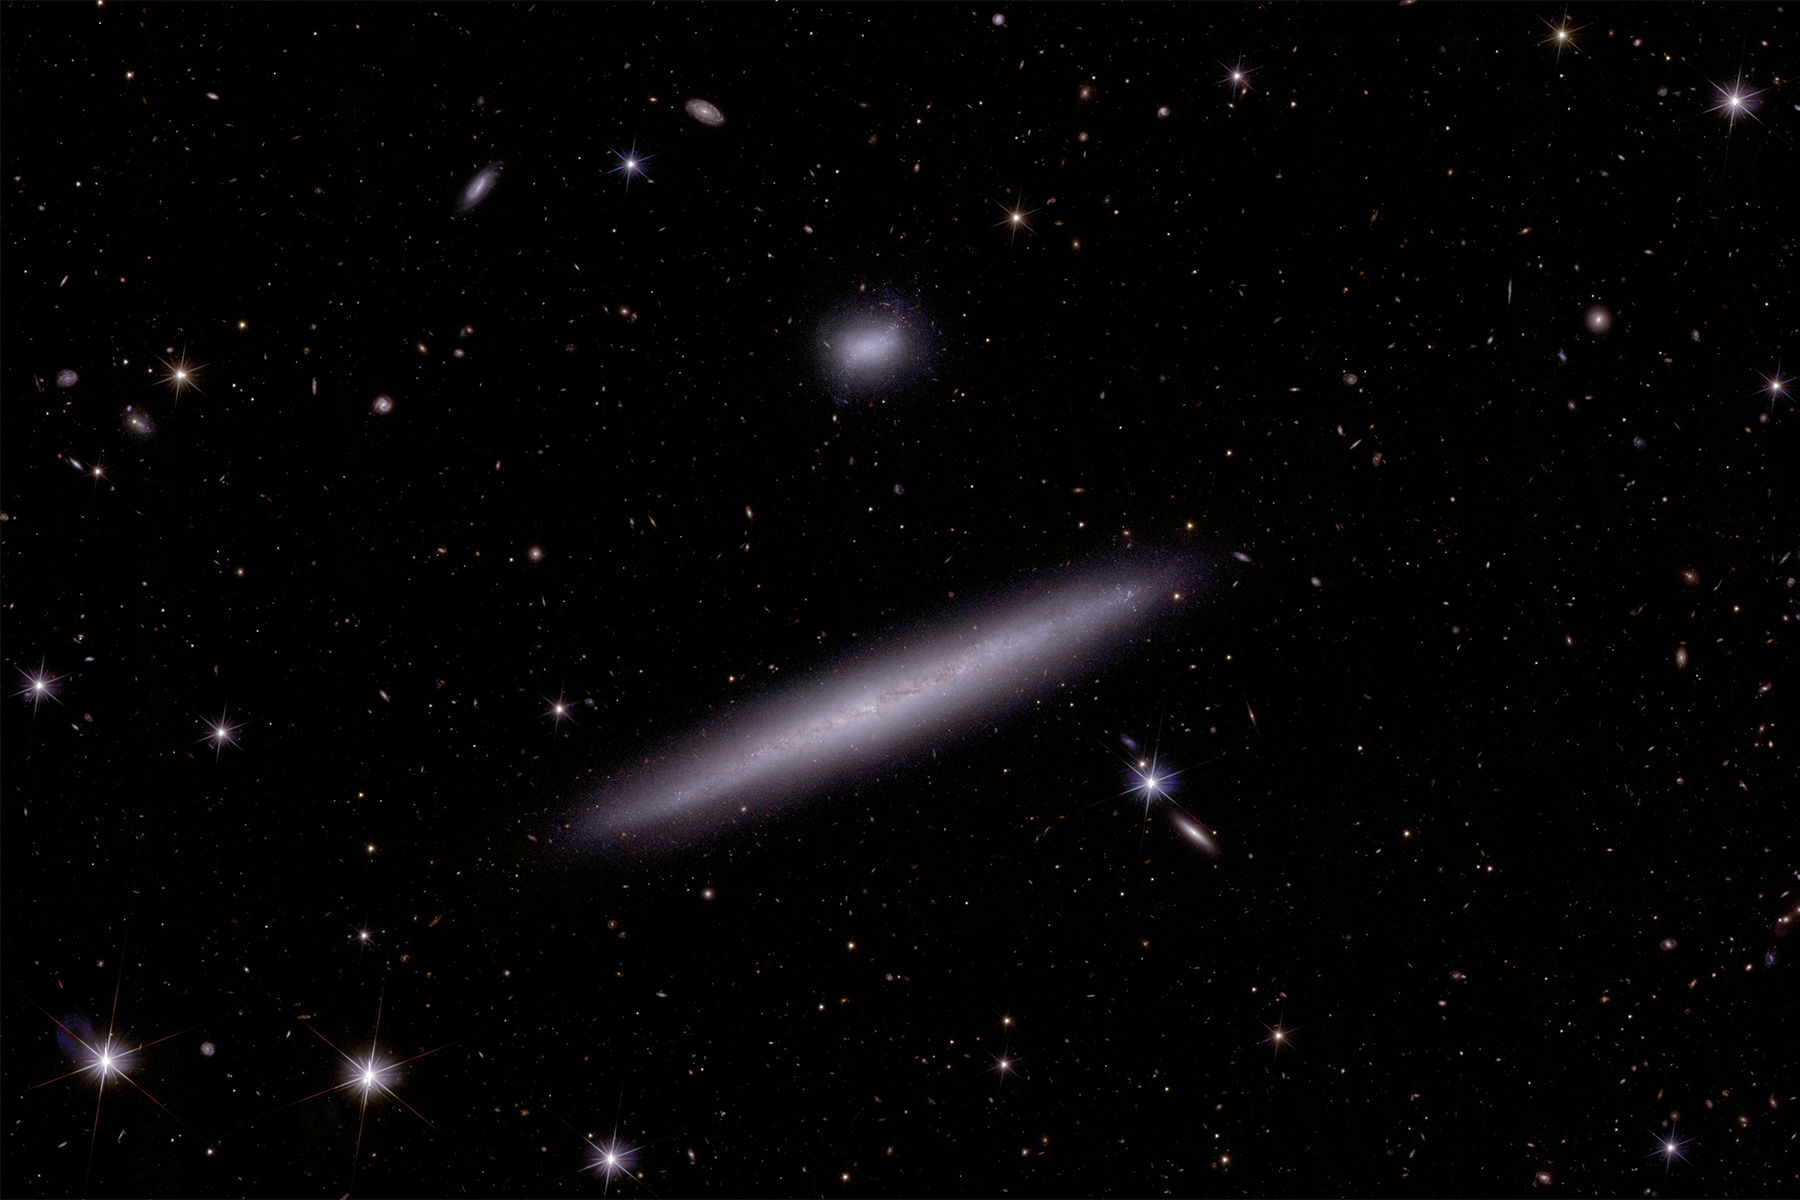 Dettaglio della fotografia delle due galassie interagenti nel Dorado realizzata da Euclid